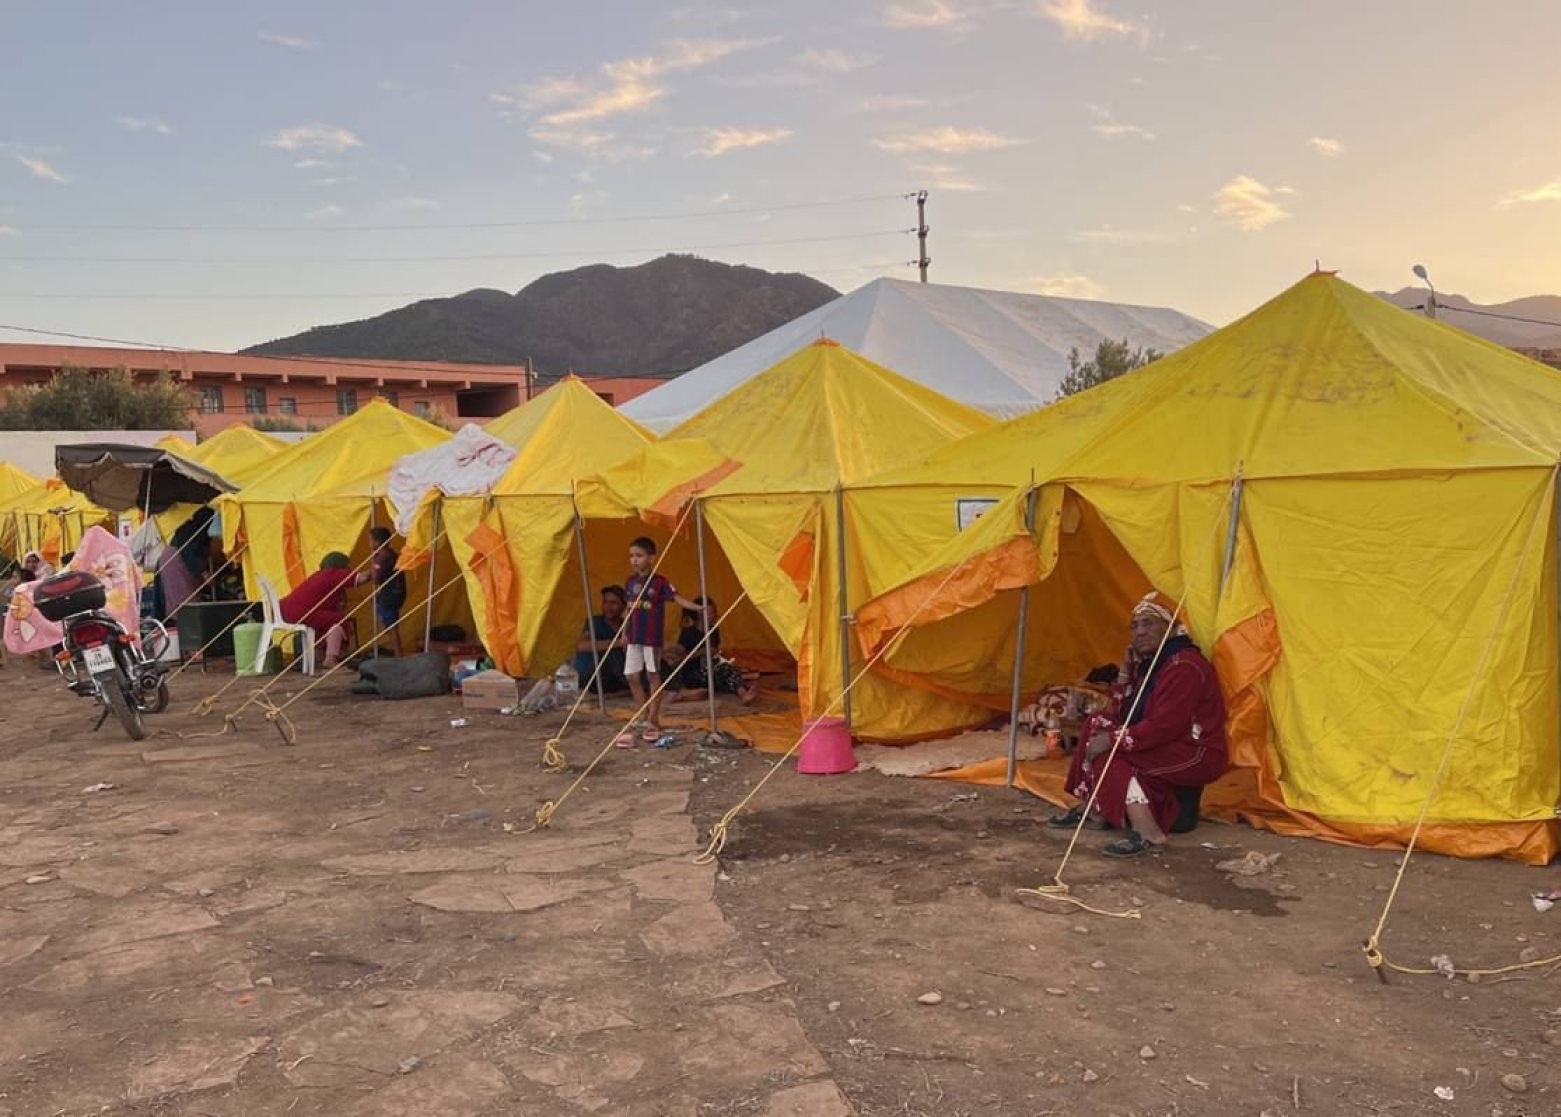 Villages sinistrés : Une journée avec les rescapés dans les camps d’hébergement